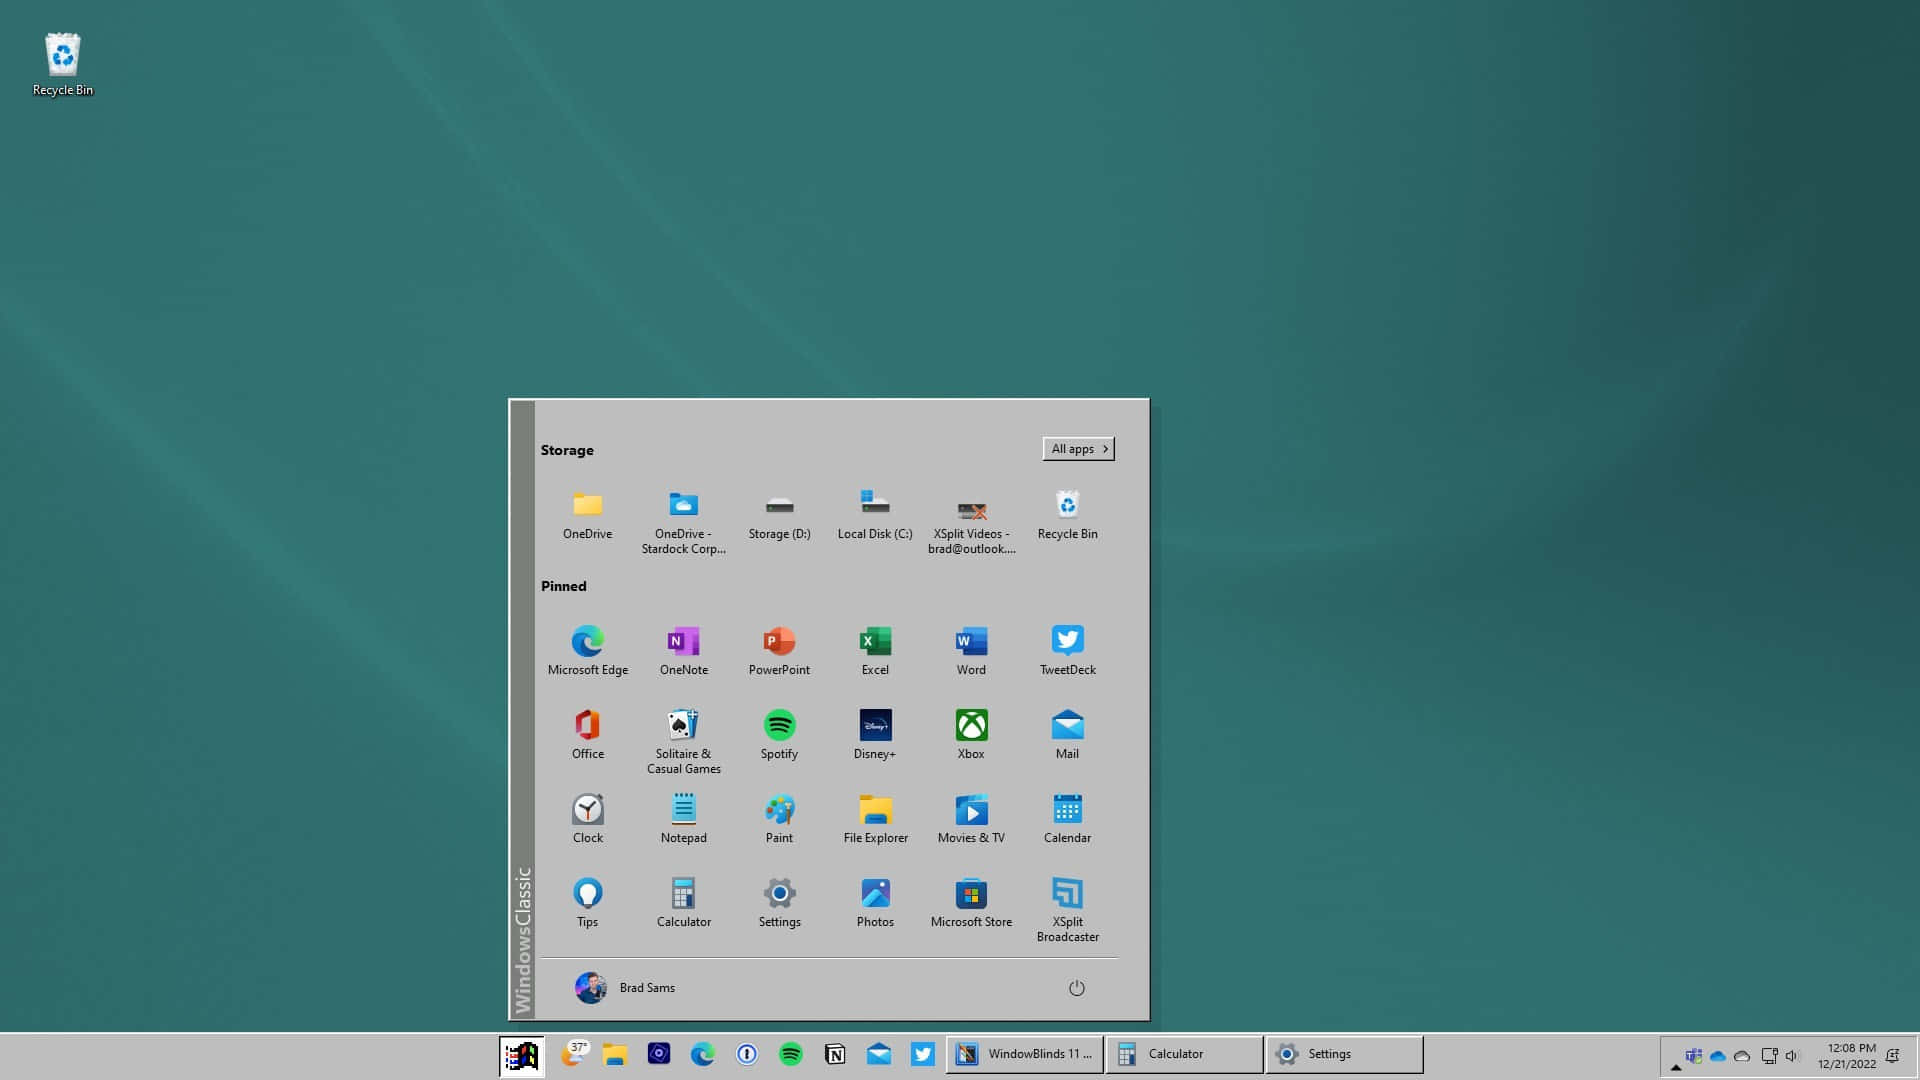 Windows 95 - Her er et kig på den banebrydende operativsystem